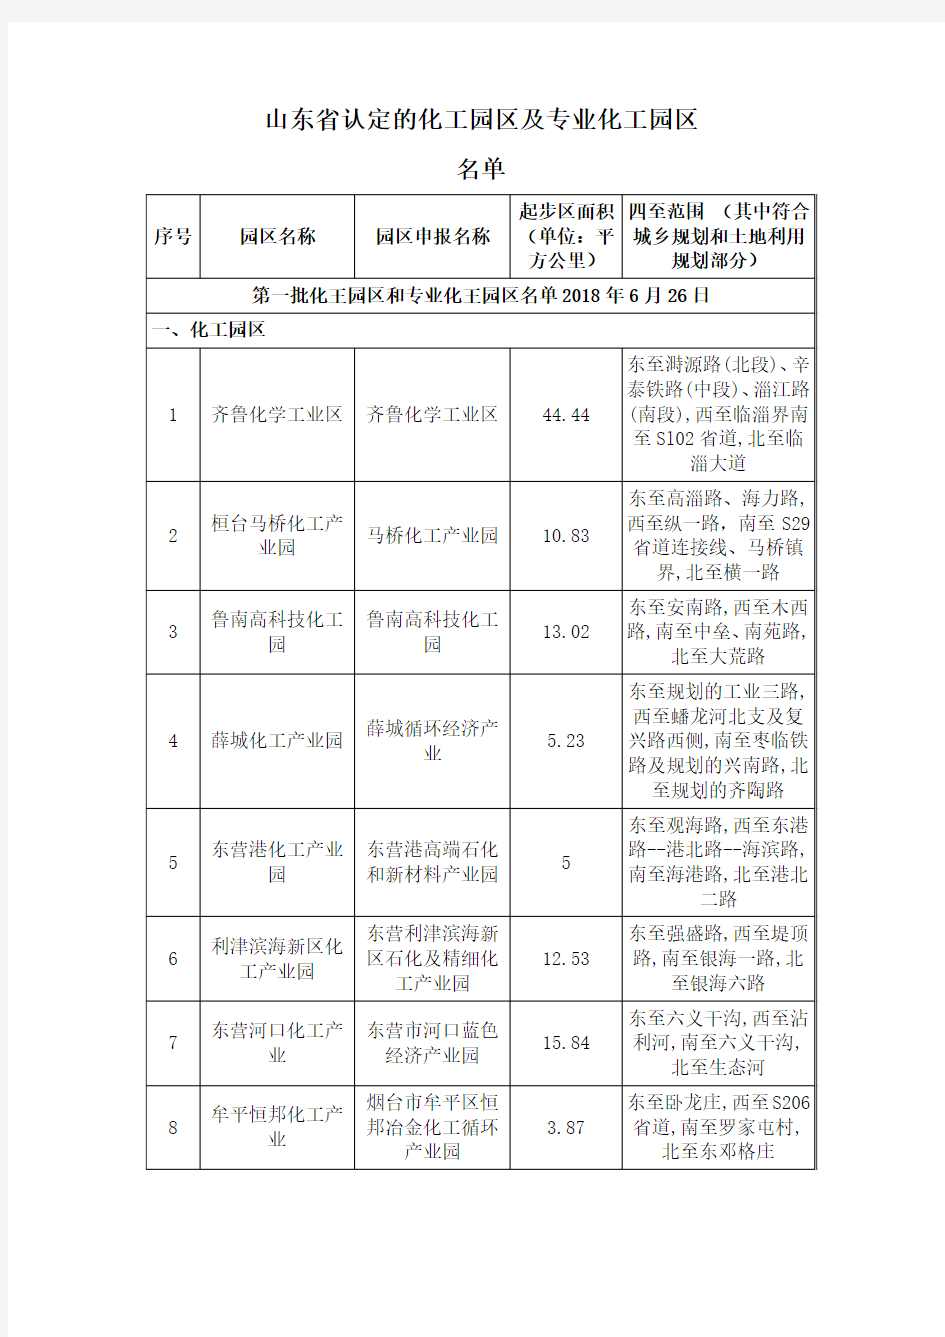 (完整版)000-山东省认定的化工园区及专业化工园区名单(全部)